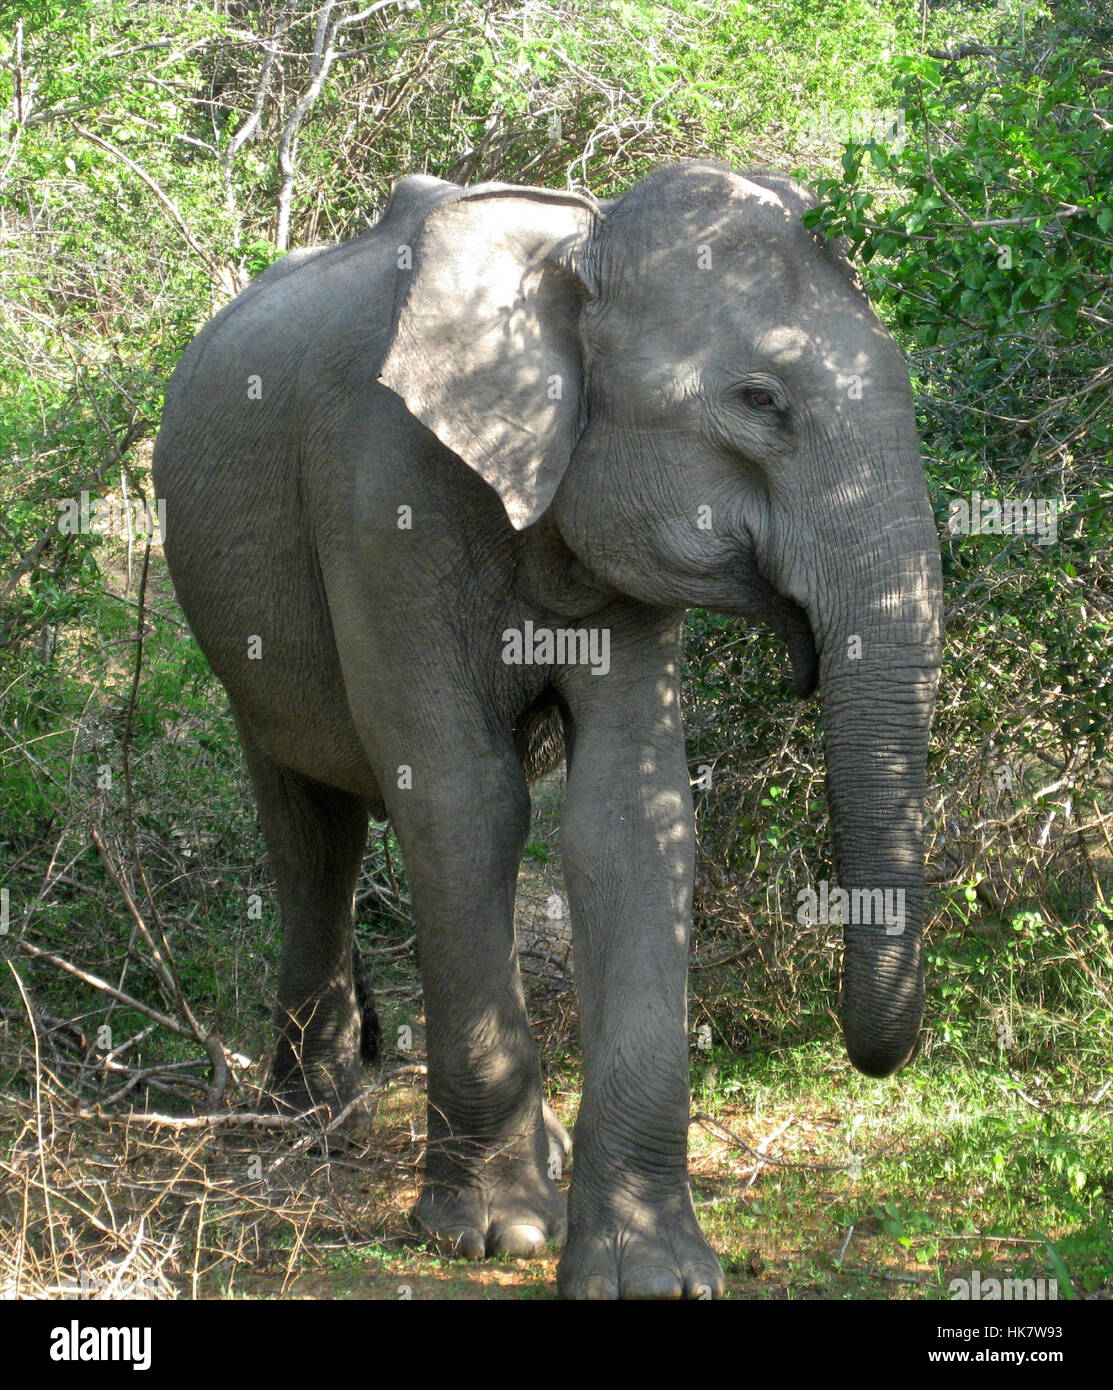 Un elefante salvaje de Sri Lanka (Elephas maximus maximus) una de las tres subespecies reconocidas del elefante asiático - fotografiado en el medio silvestre en Sri Lanka Foto de stock